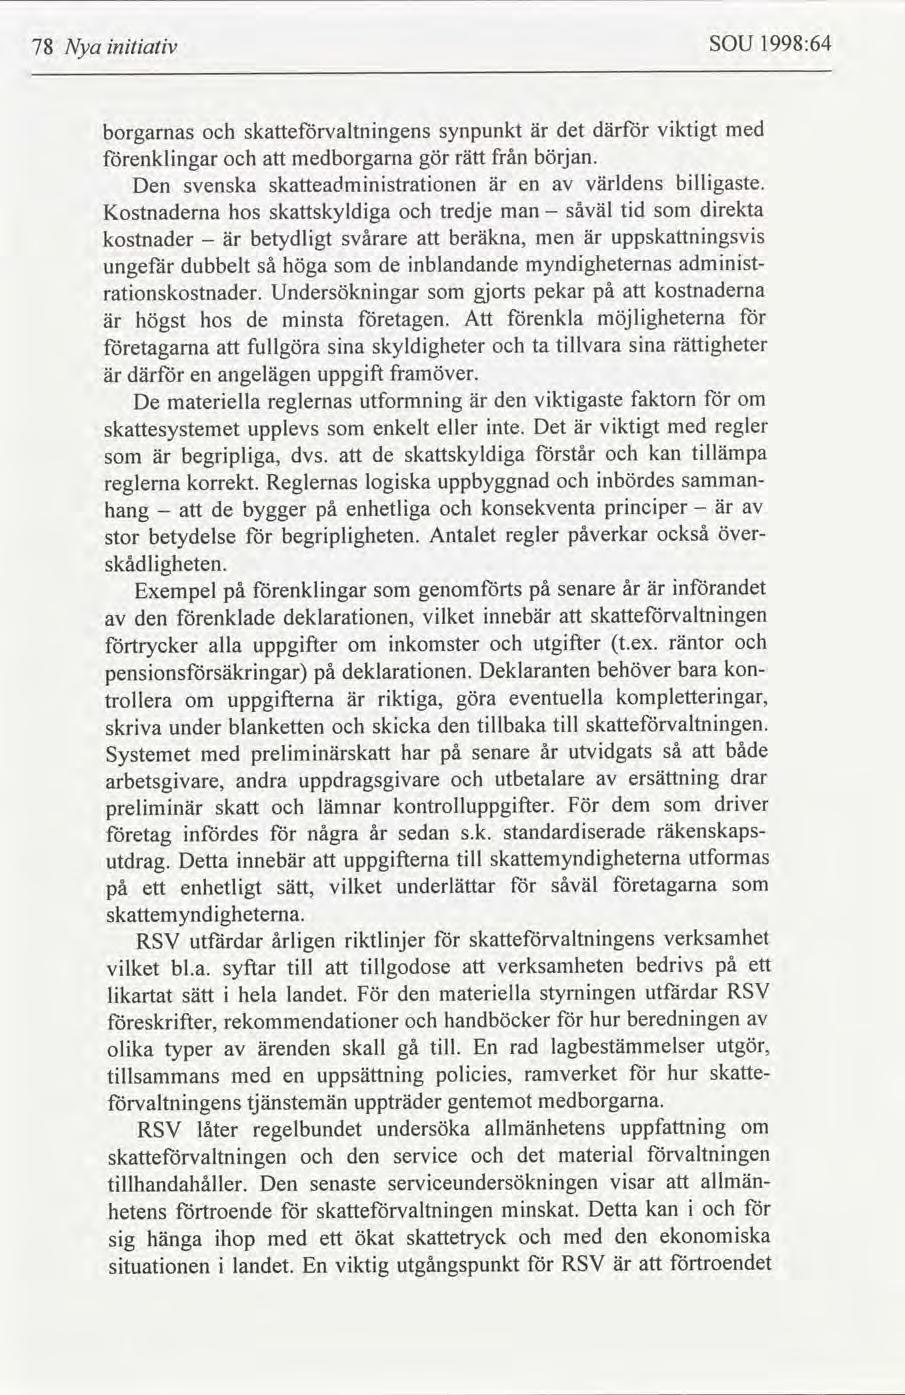 1998:64 SOU 78 Nya ntatv vktgt med där synpunkt det skevaltnngens är borgarnas början. från medborgarna enklngar rätt gör bllgaste.